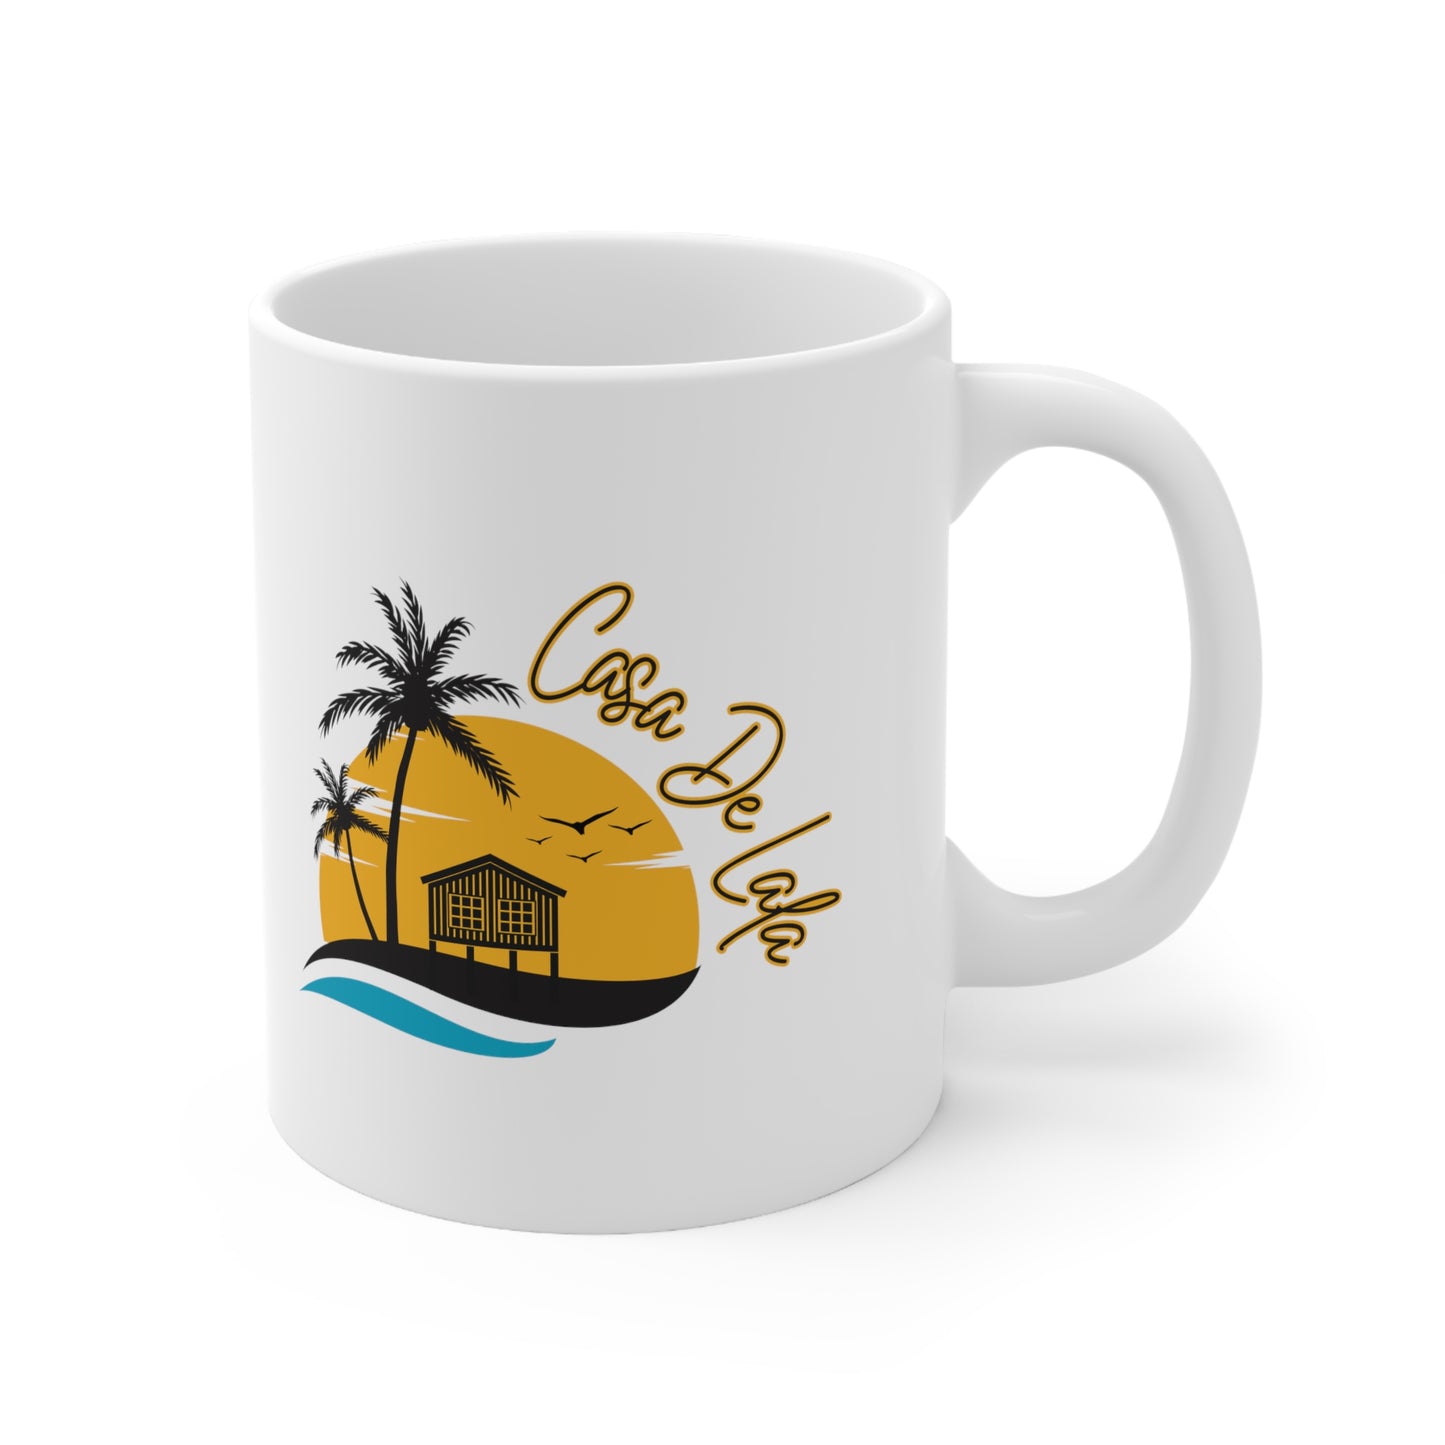 Casa de Lala Coffee Mug, 11oz